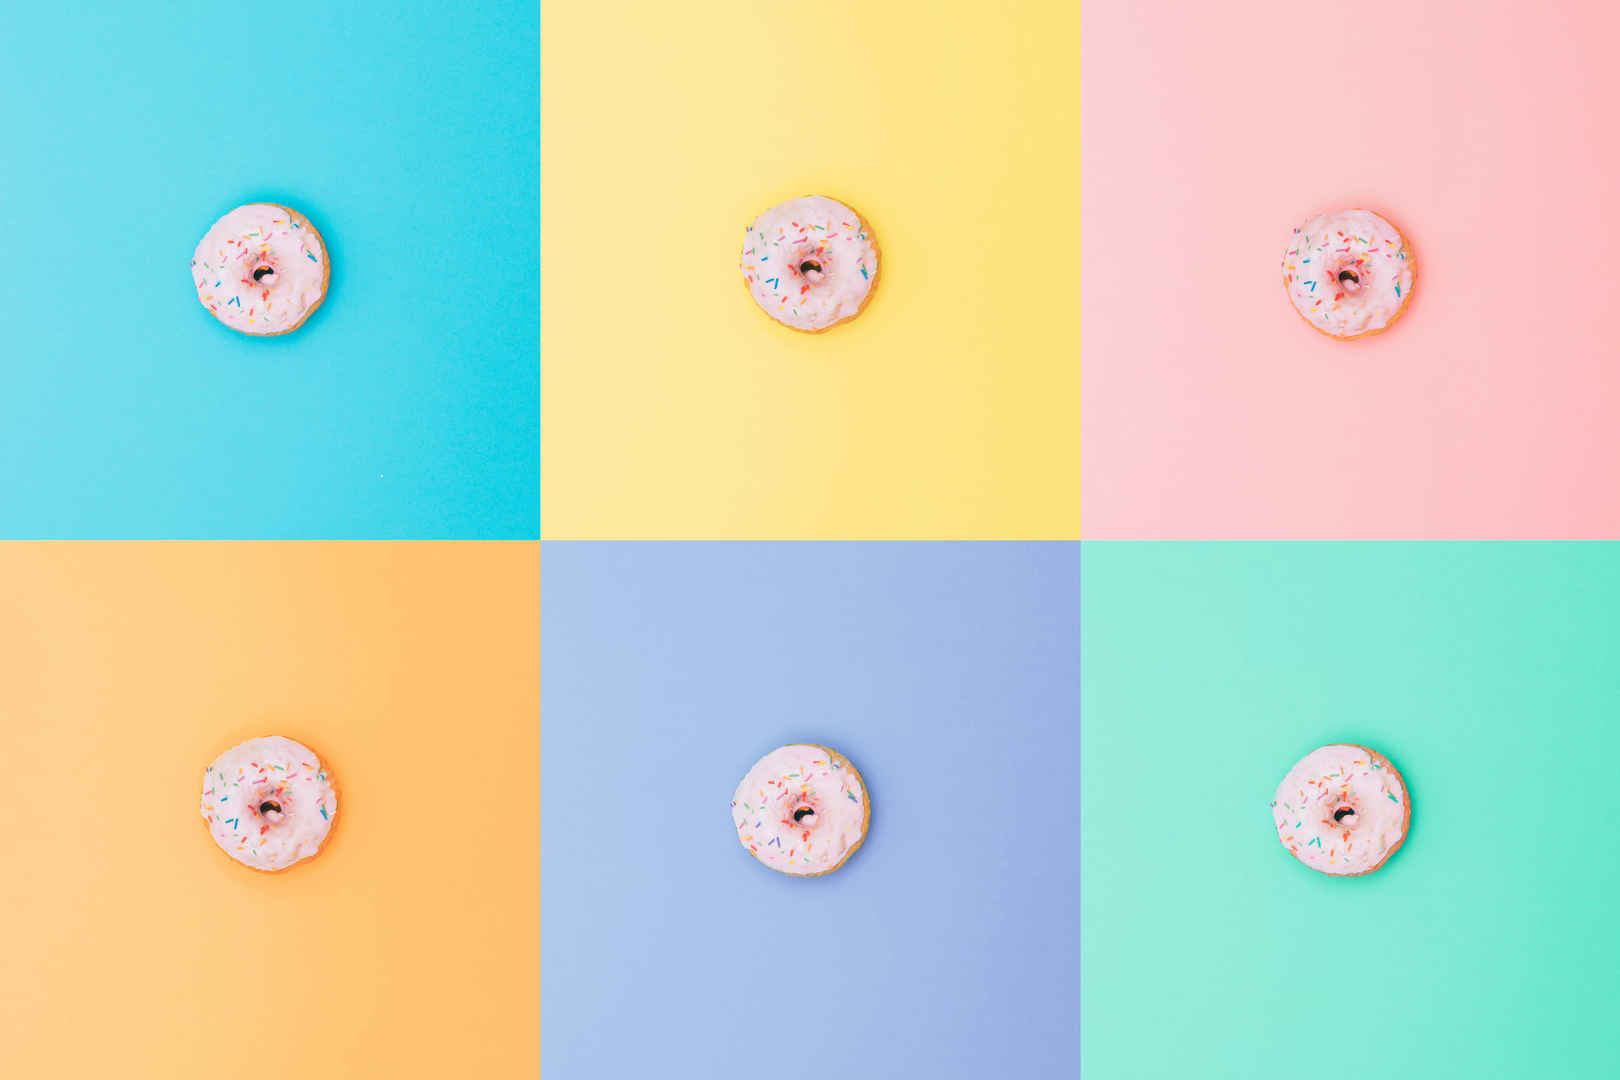 极简主义风格粉色甜甜圈壁纸-